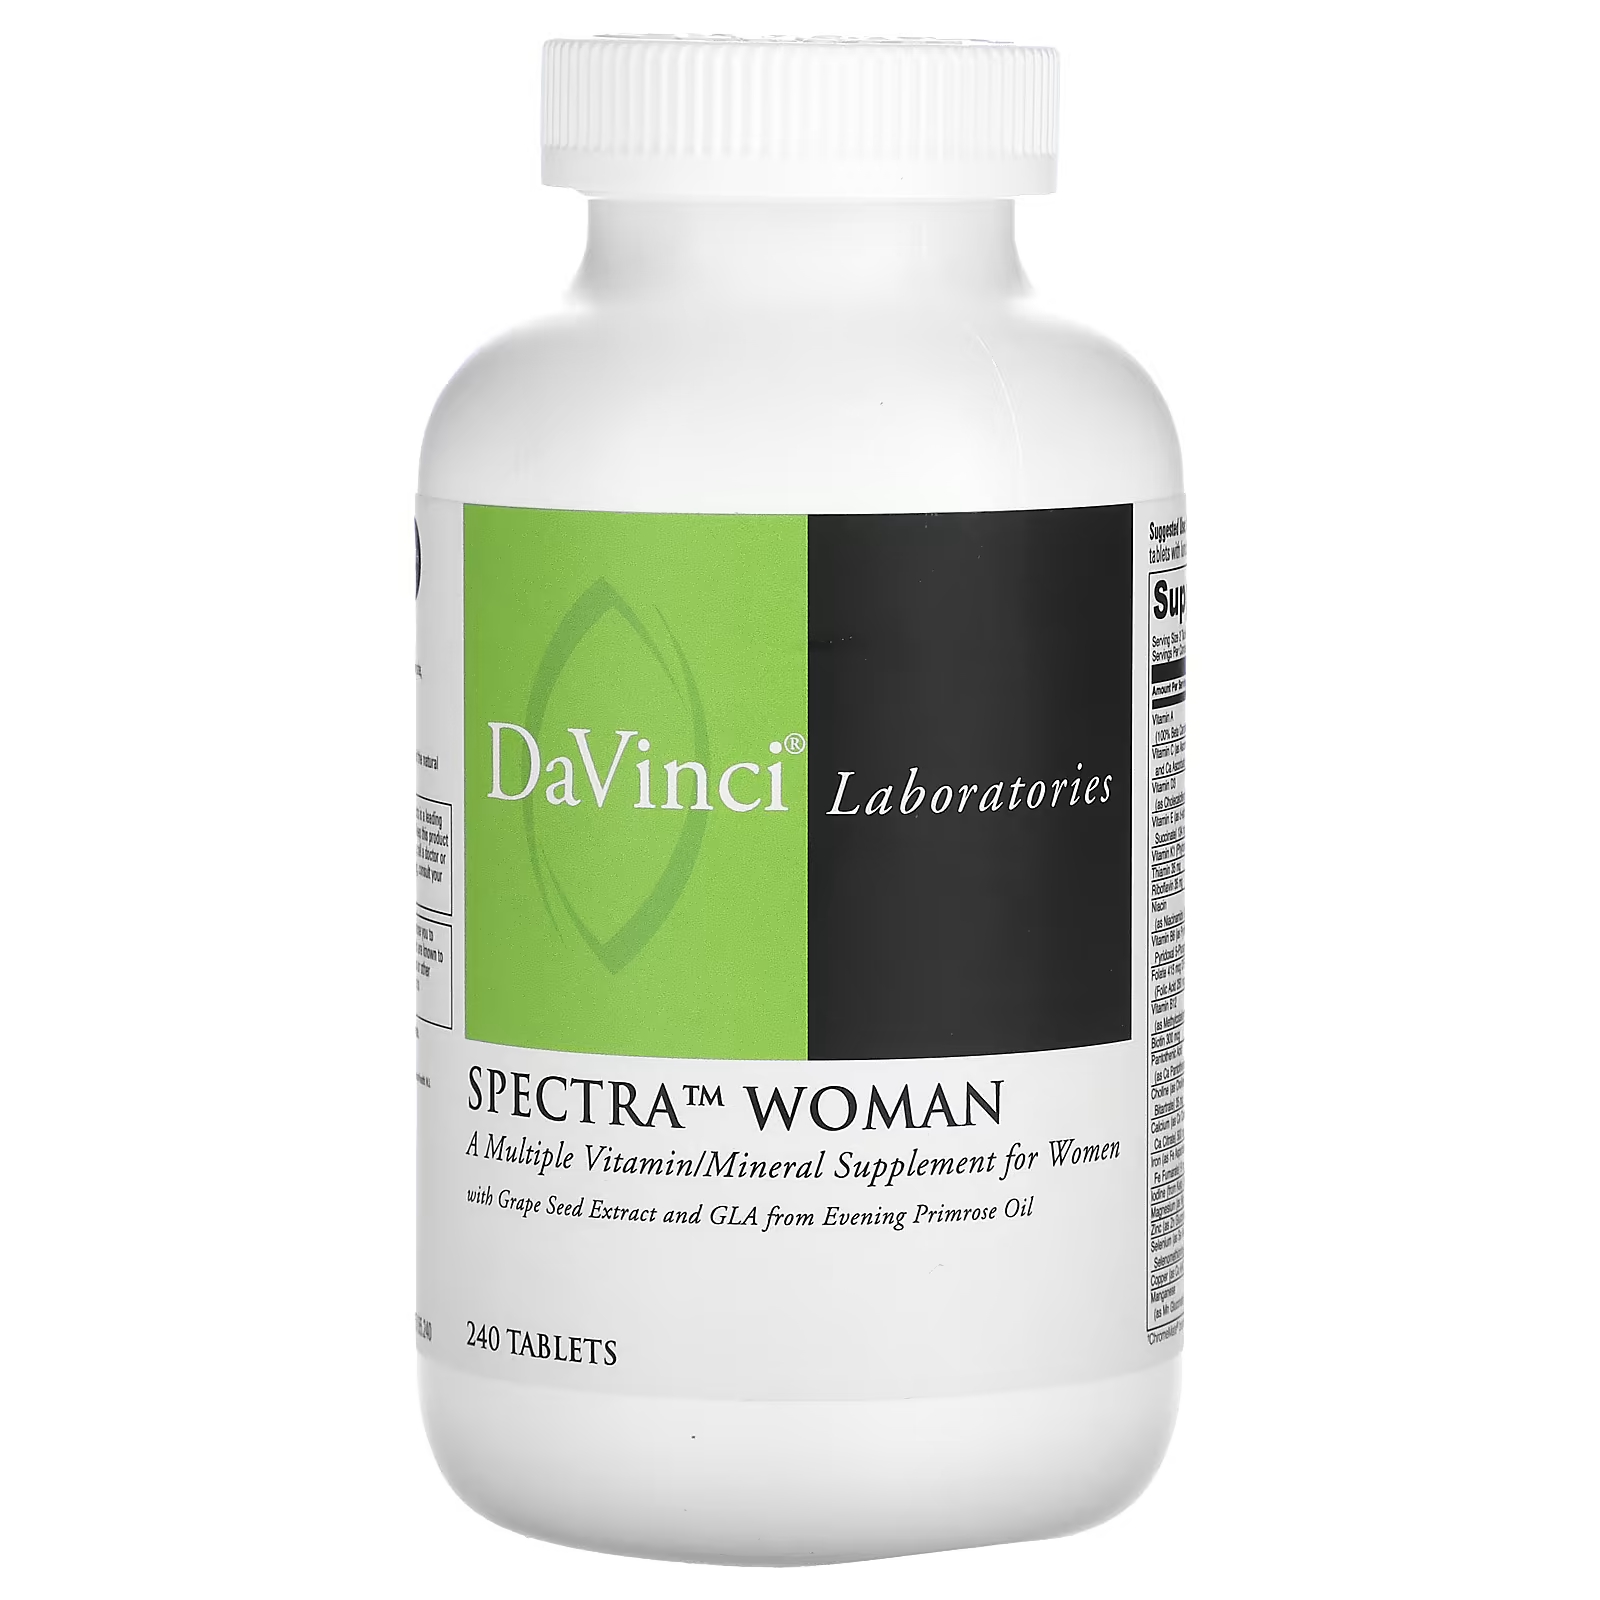 Витаминно-минеральные комплекс DaVinci Laboratories of Vermont Spectra Woman, 240 таблеток бады для женского здоровья bioniq essential вуман – woman легкоусвояемое железо для женщин